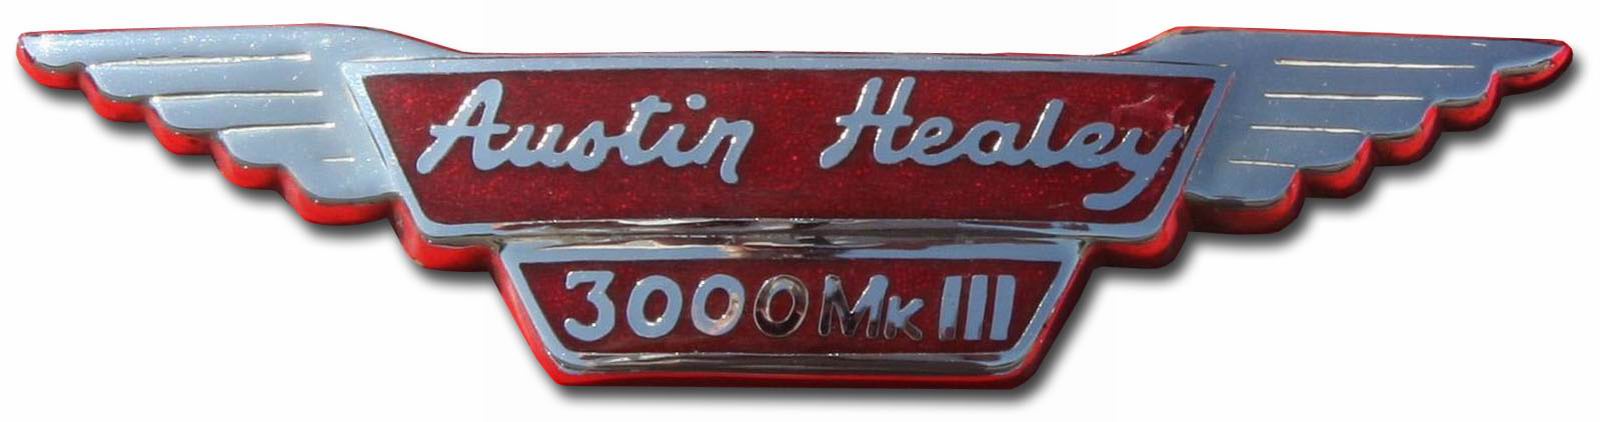 Austin-Healey 3000 Mk III (1963-1967 hood emblem)1